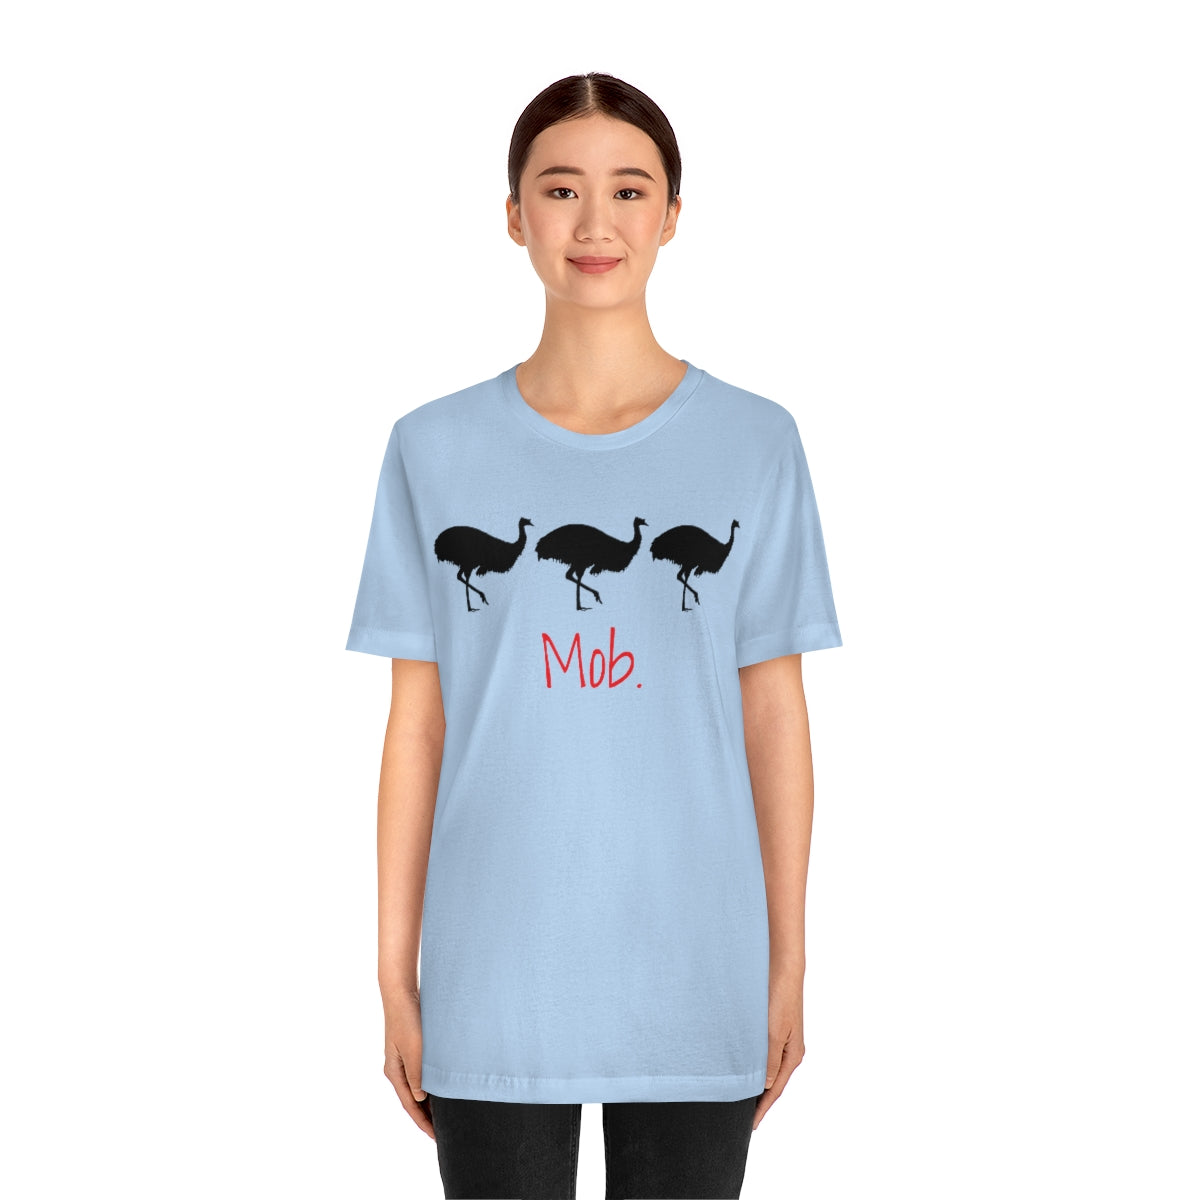 Mob of Emus T-shirt